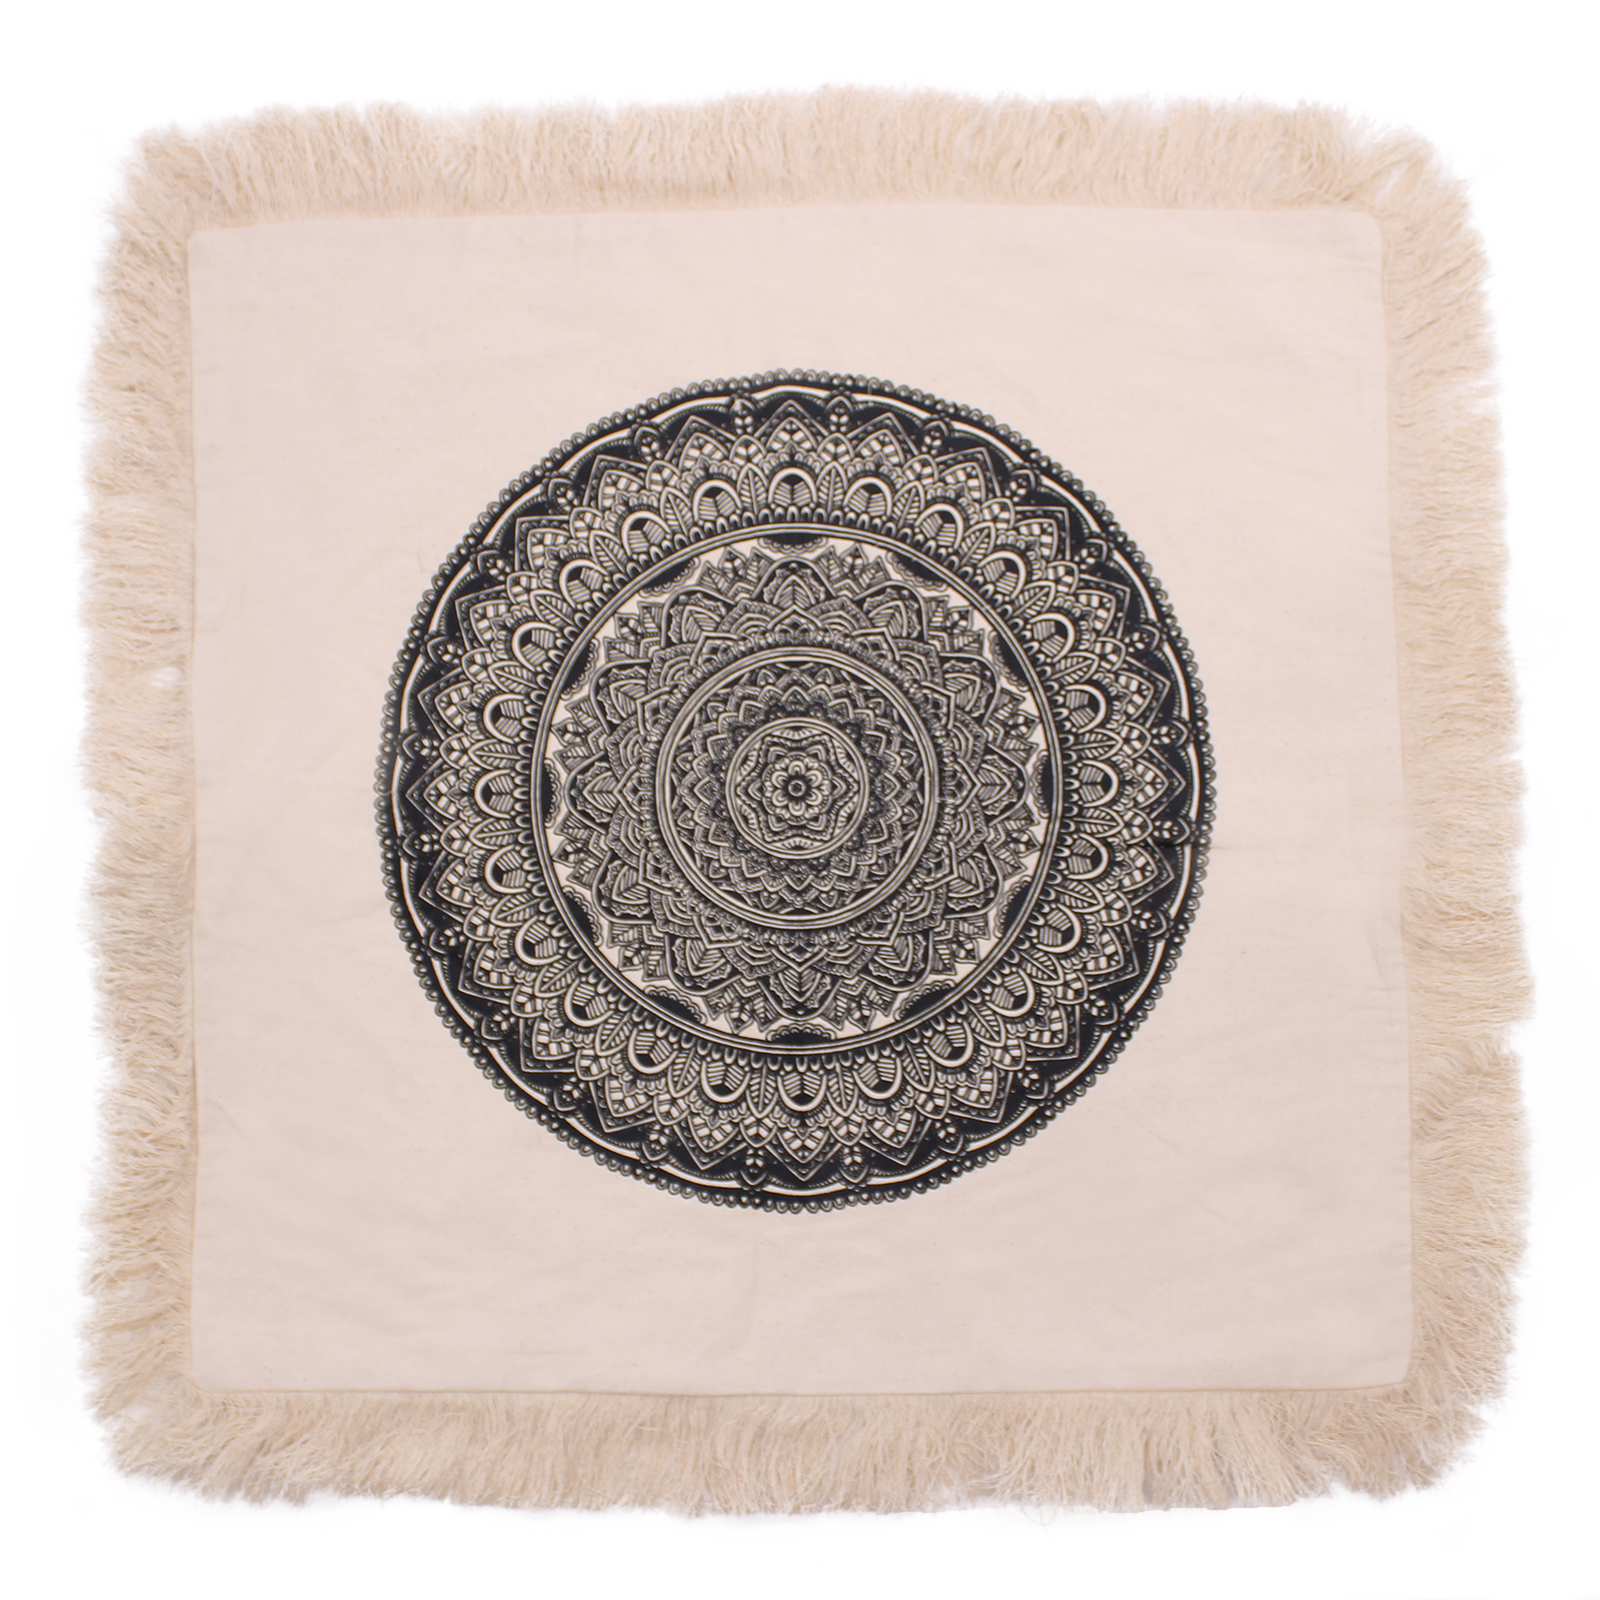 Traditional Mandala Cushion Cover - 60x60cm - black